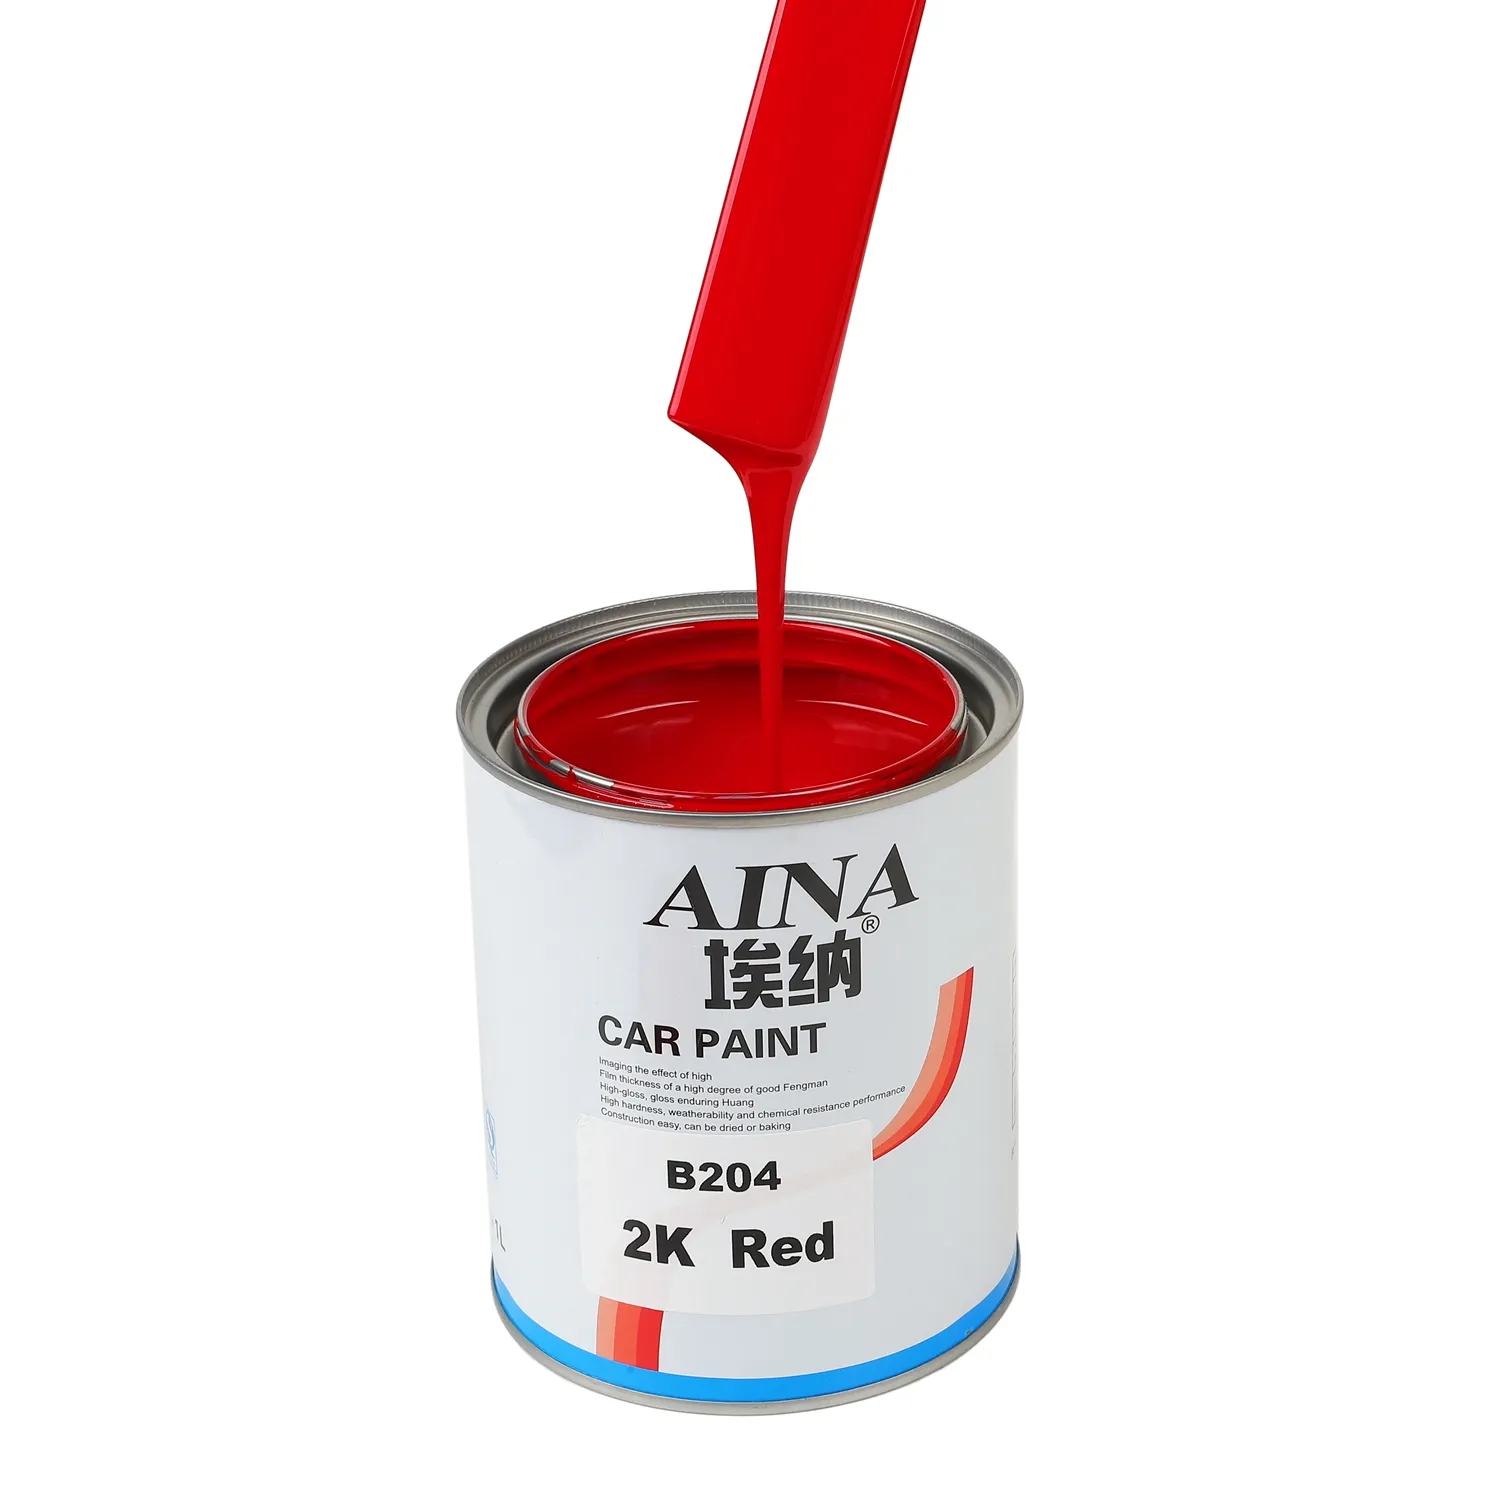 B204 Acryl Hitze beständige Autolack reparatur Autolack Genaue Farb abstimmung Autolack 2K Rote Farbe